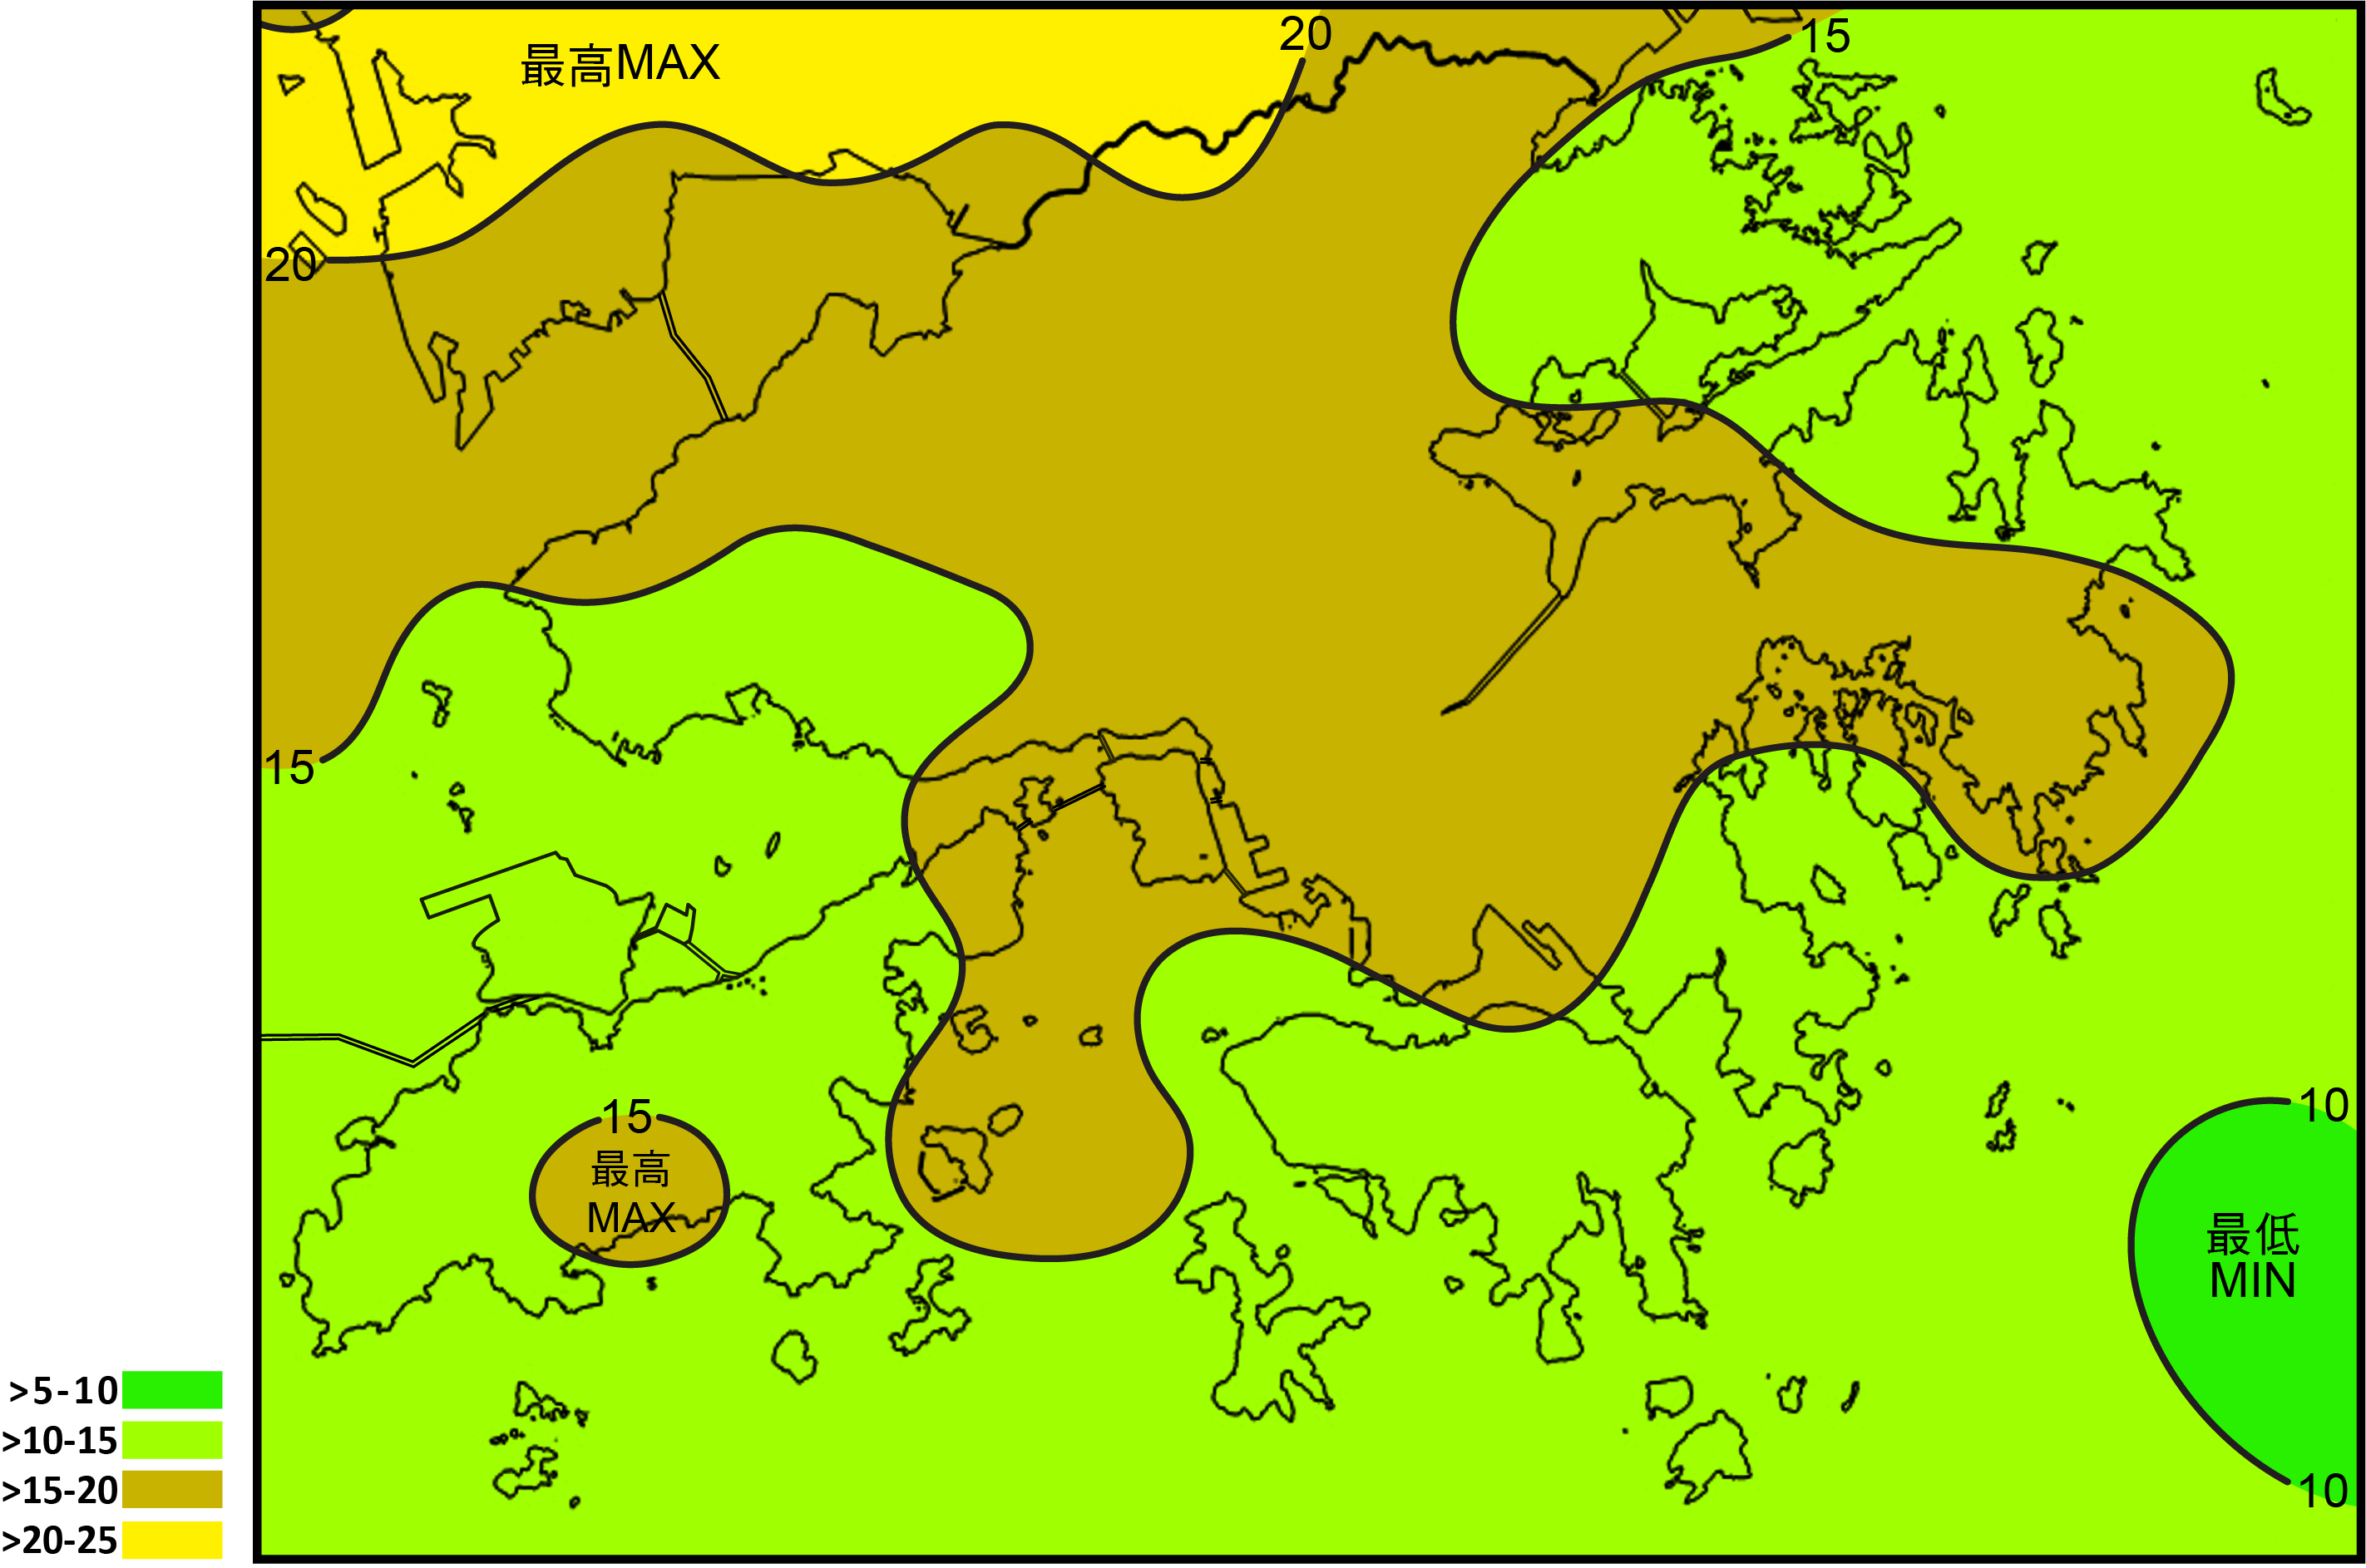 2006 年至 2023 年在香港境內每平方公里的年平均雲對地閃電次數普遍介乎10至20